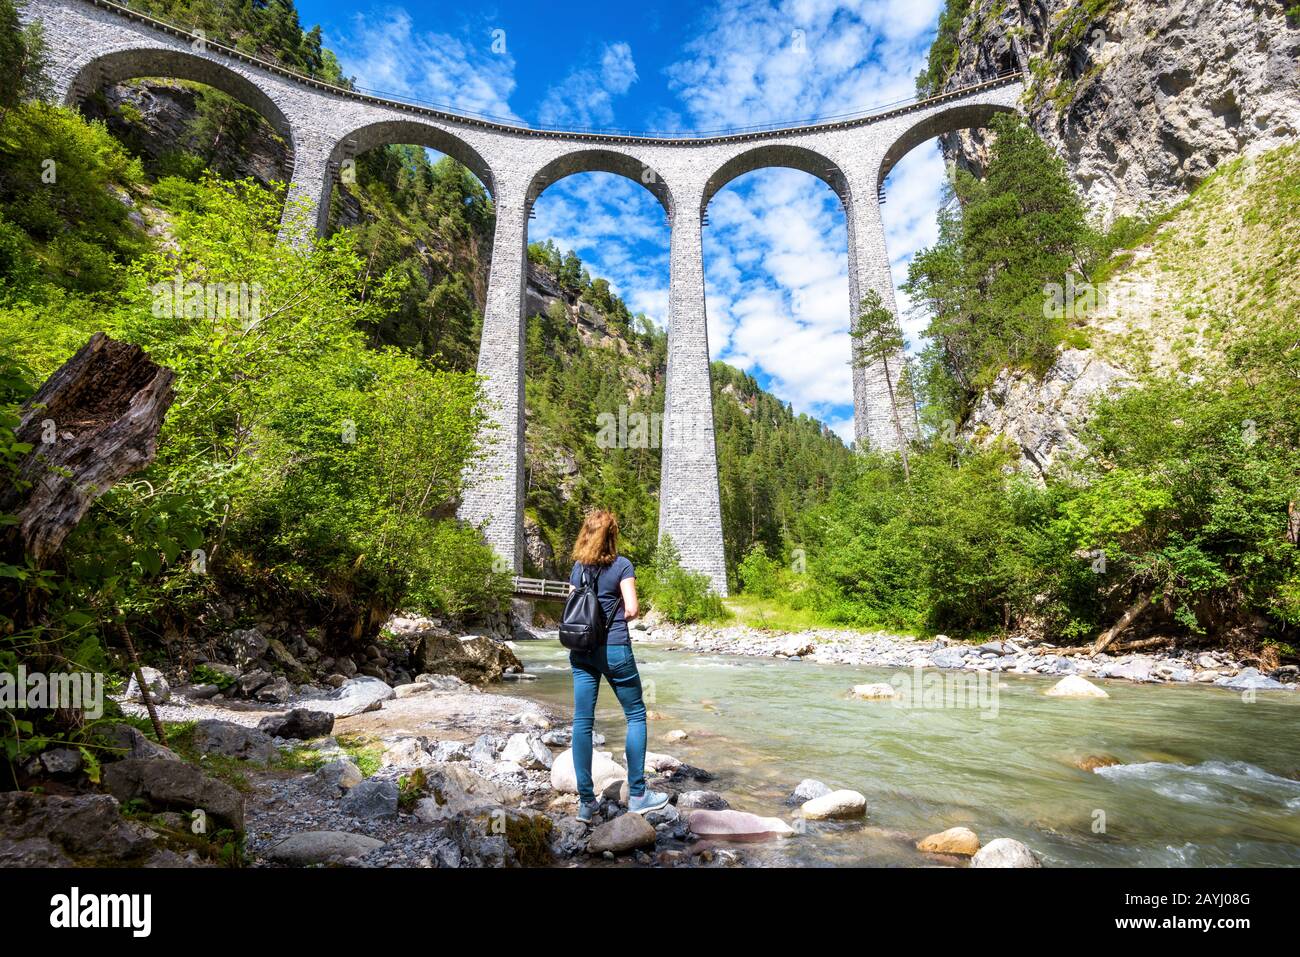 Landwasser-Viadukt in Filisur, Schweiz. Junge Frau schaut auf die berühmte Touristenattraktion. Panorama-Blick auf die hohe Eisenbahnbrücke in den Bergen. A Stockfoto